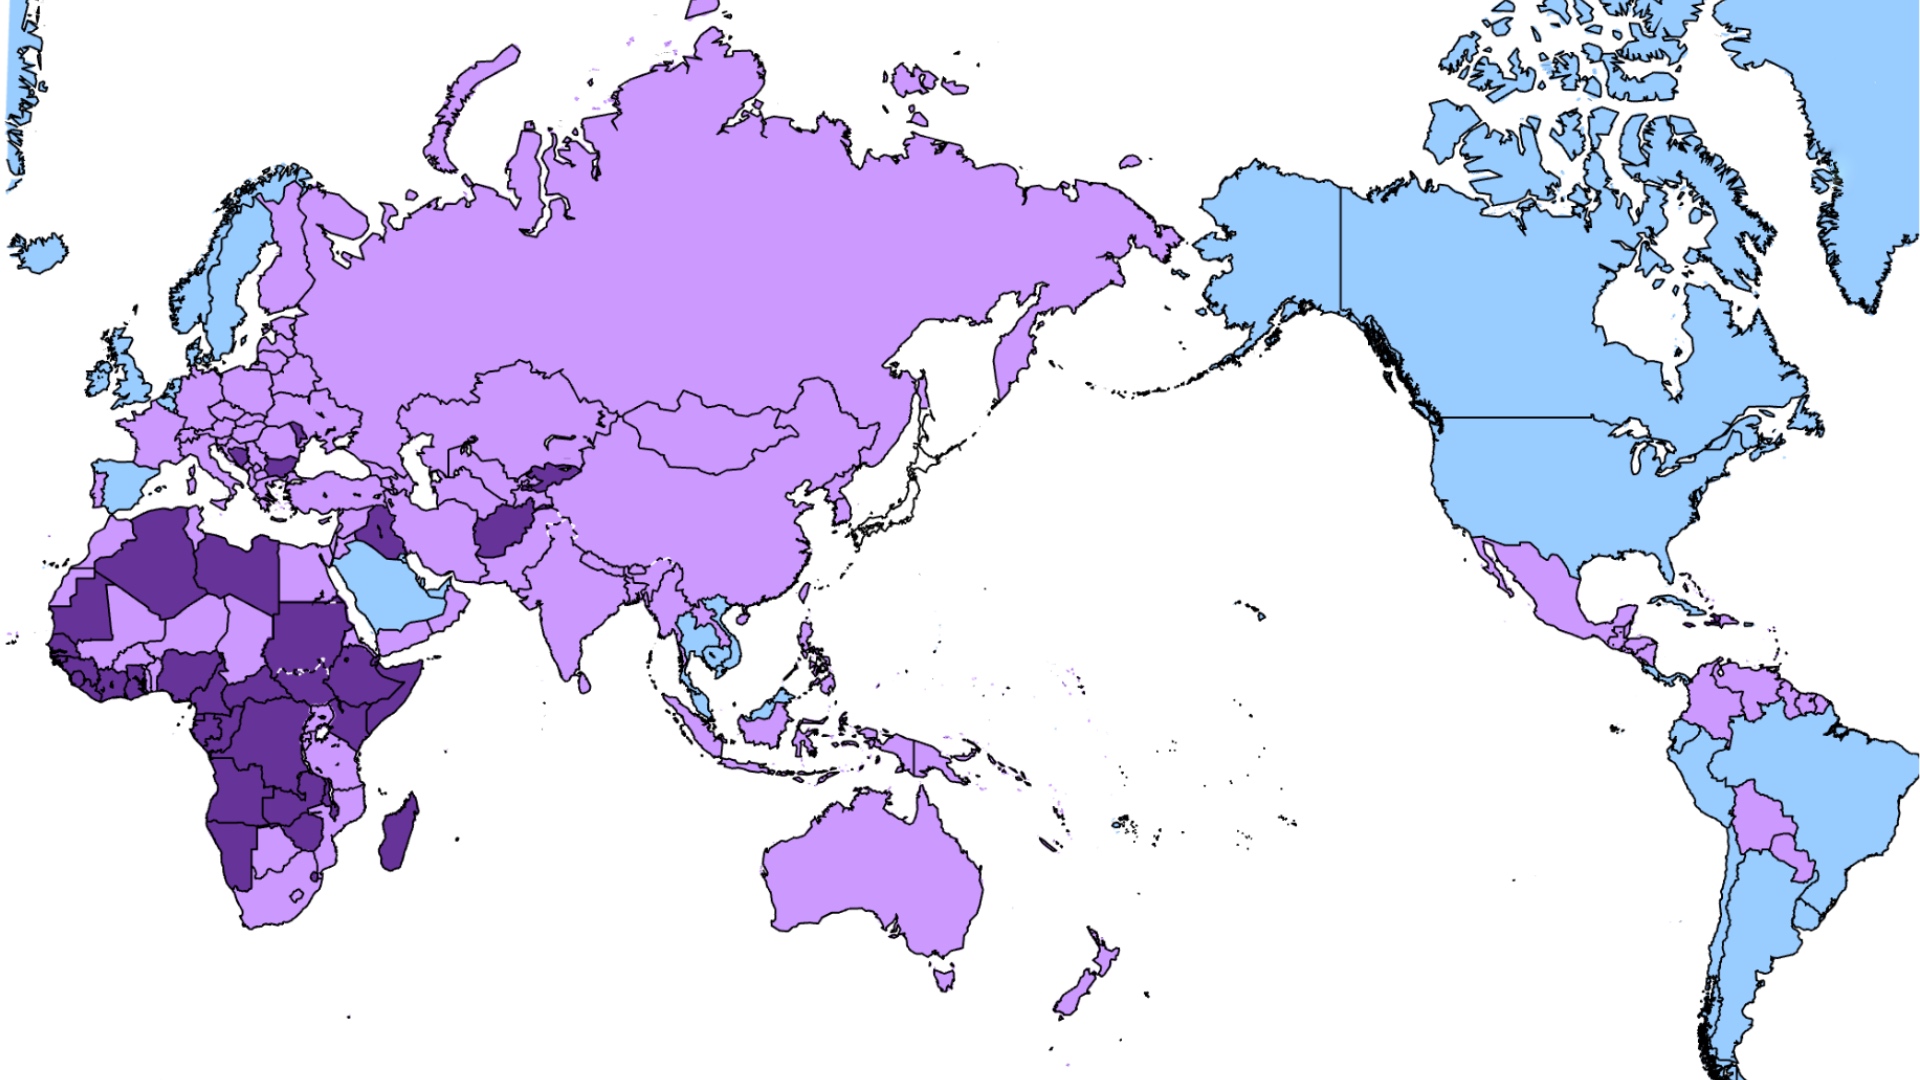 Für die blau markierten Länder gilt neu nur noch die Pandemie-Warnstufe 1.